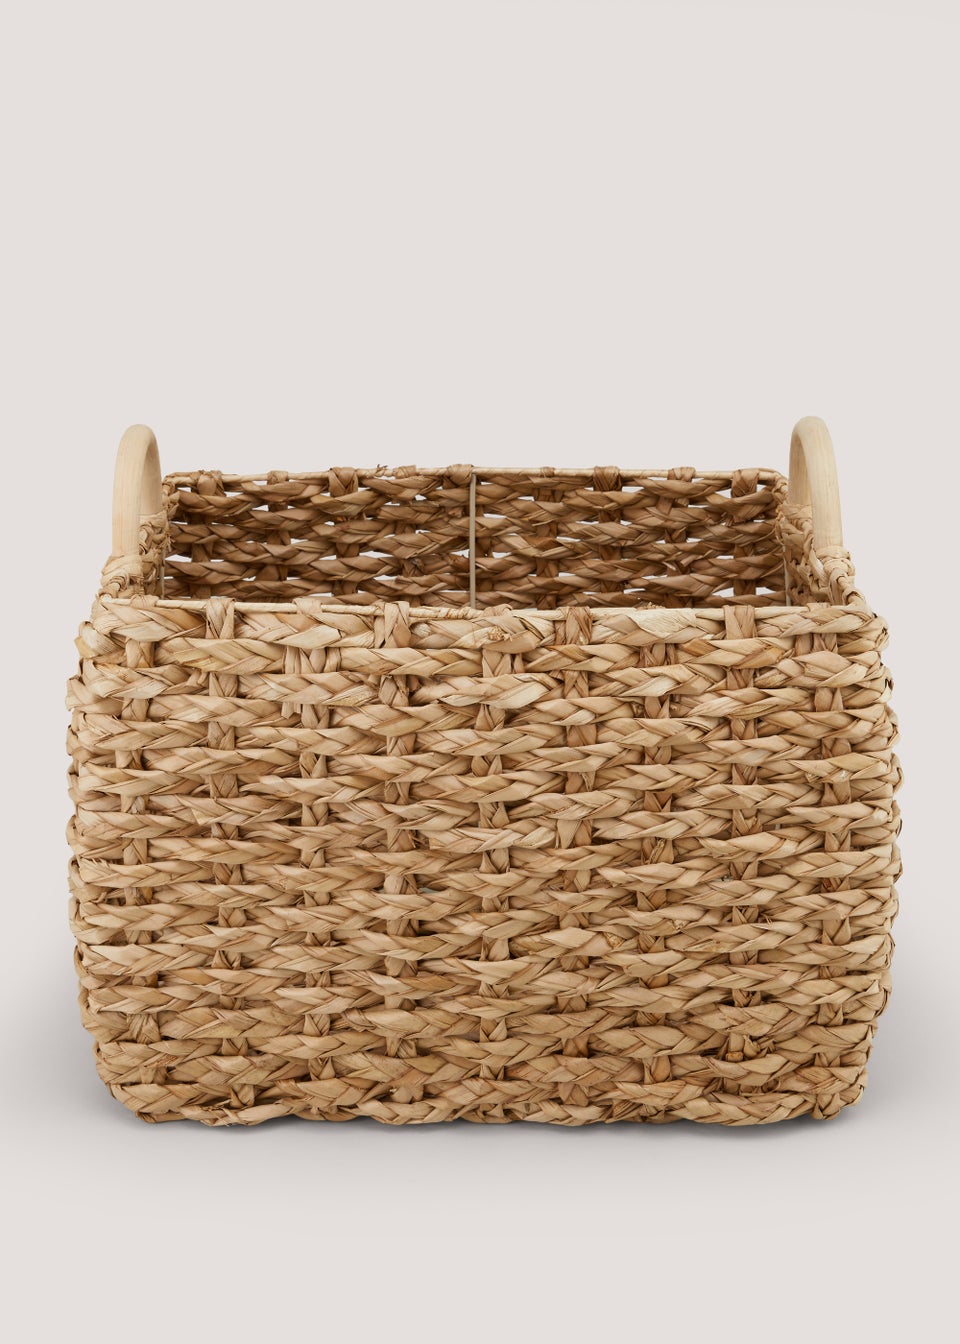 Natural Woven Storage Basket (40cm x 35cm x 33cm)